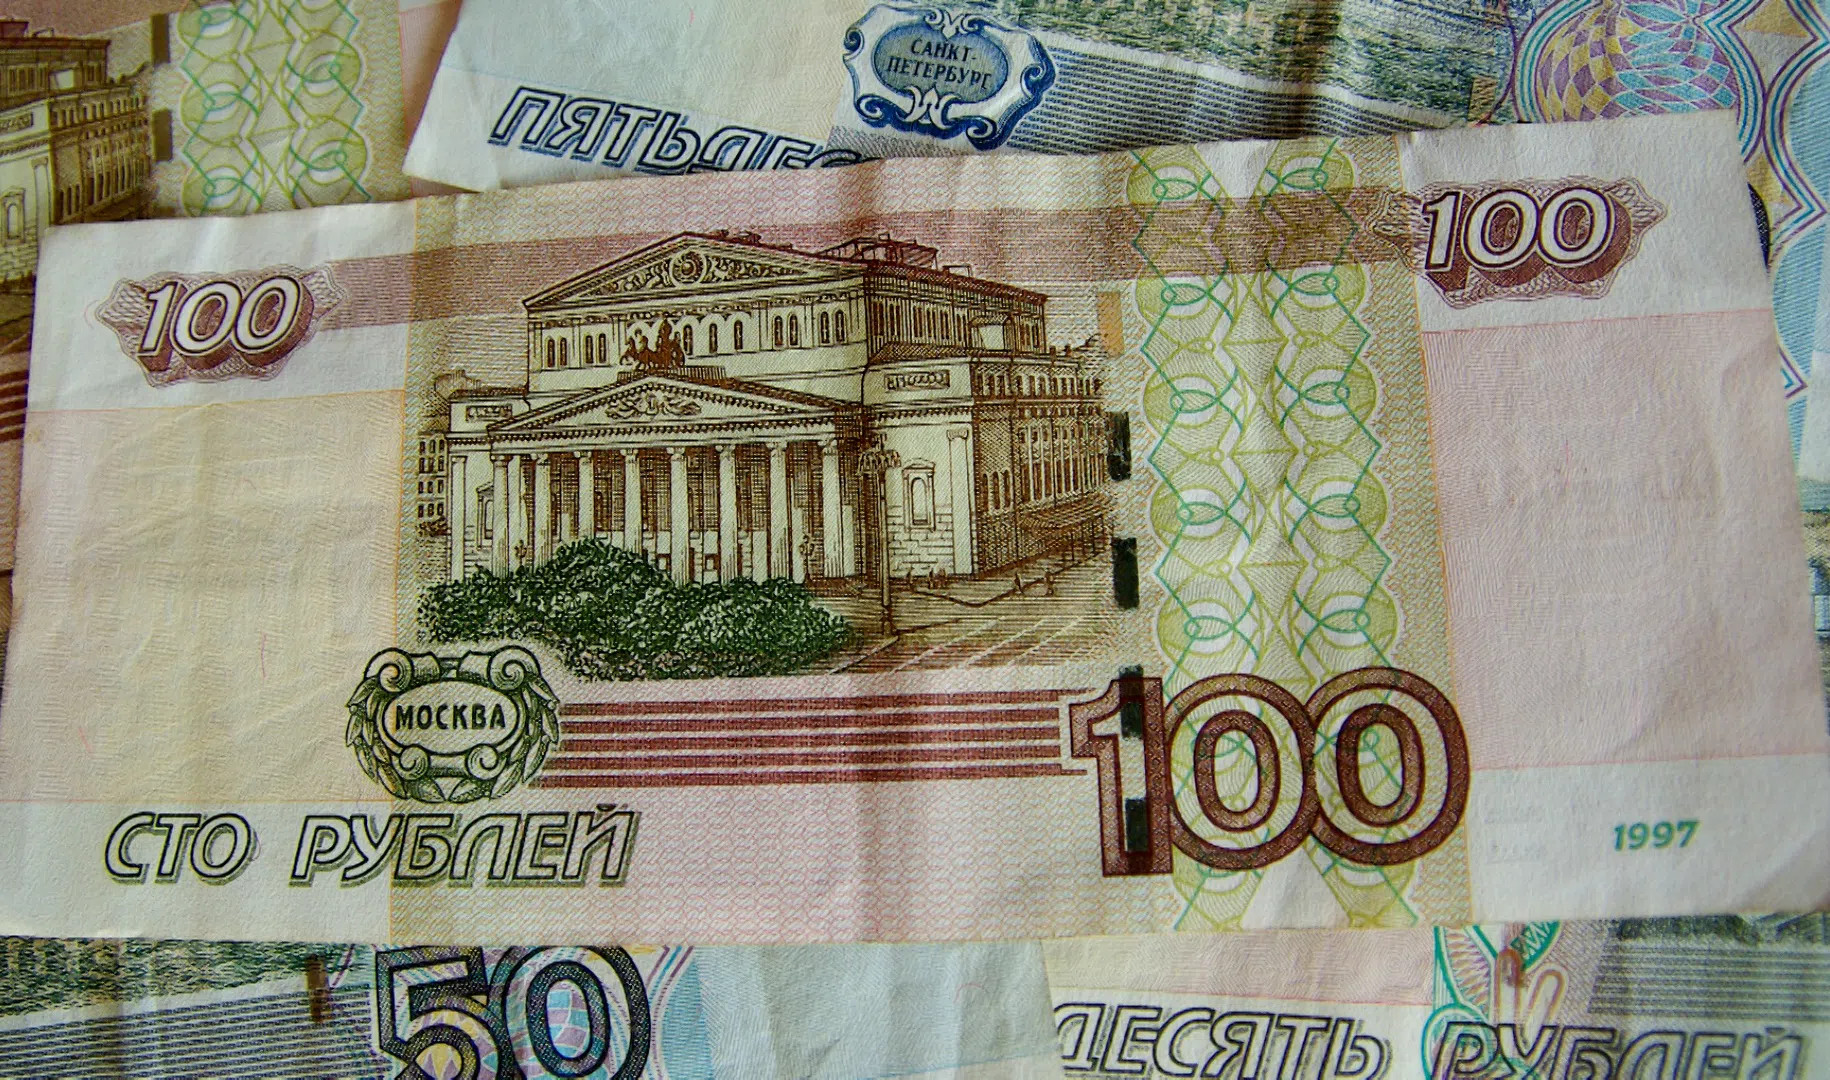 100-рублевая банкнота изменит дизайн